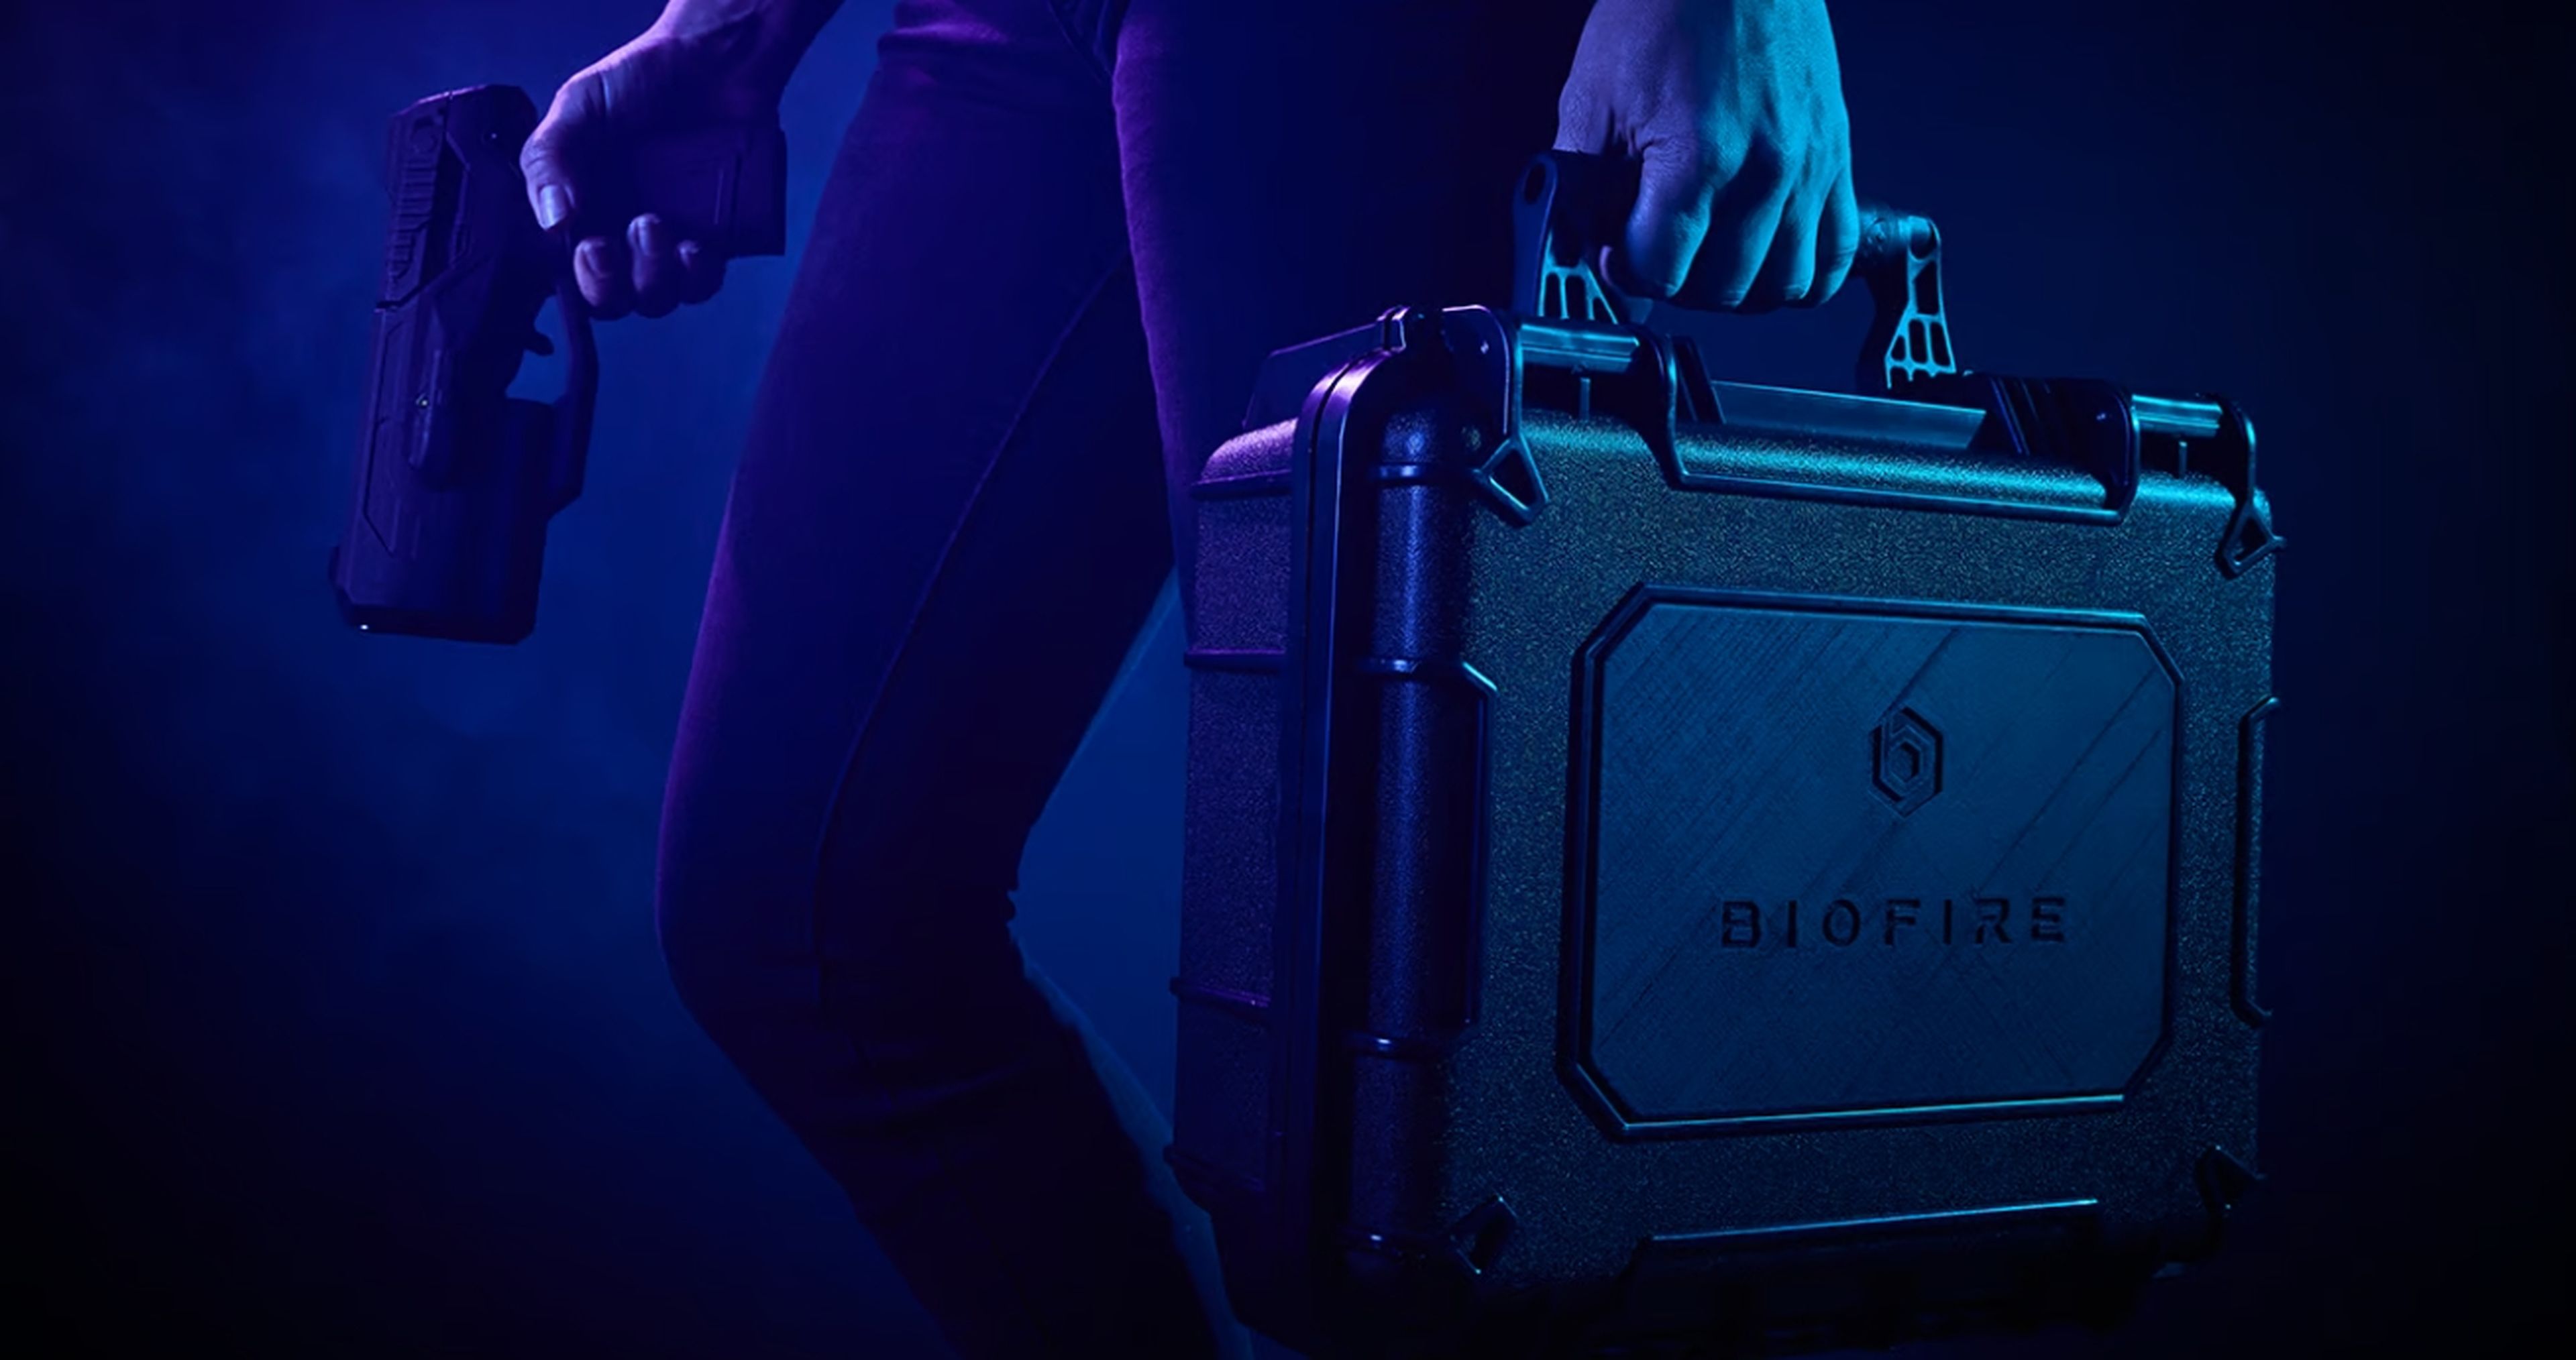 Biofire Smart Gun, la pistola con huella dactilar y reconocimiento facial que quiere salvar cientos de vidas